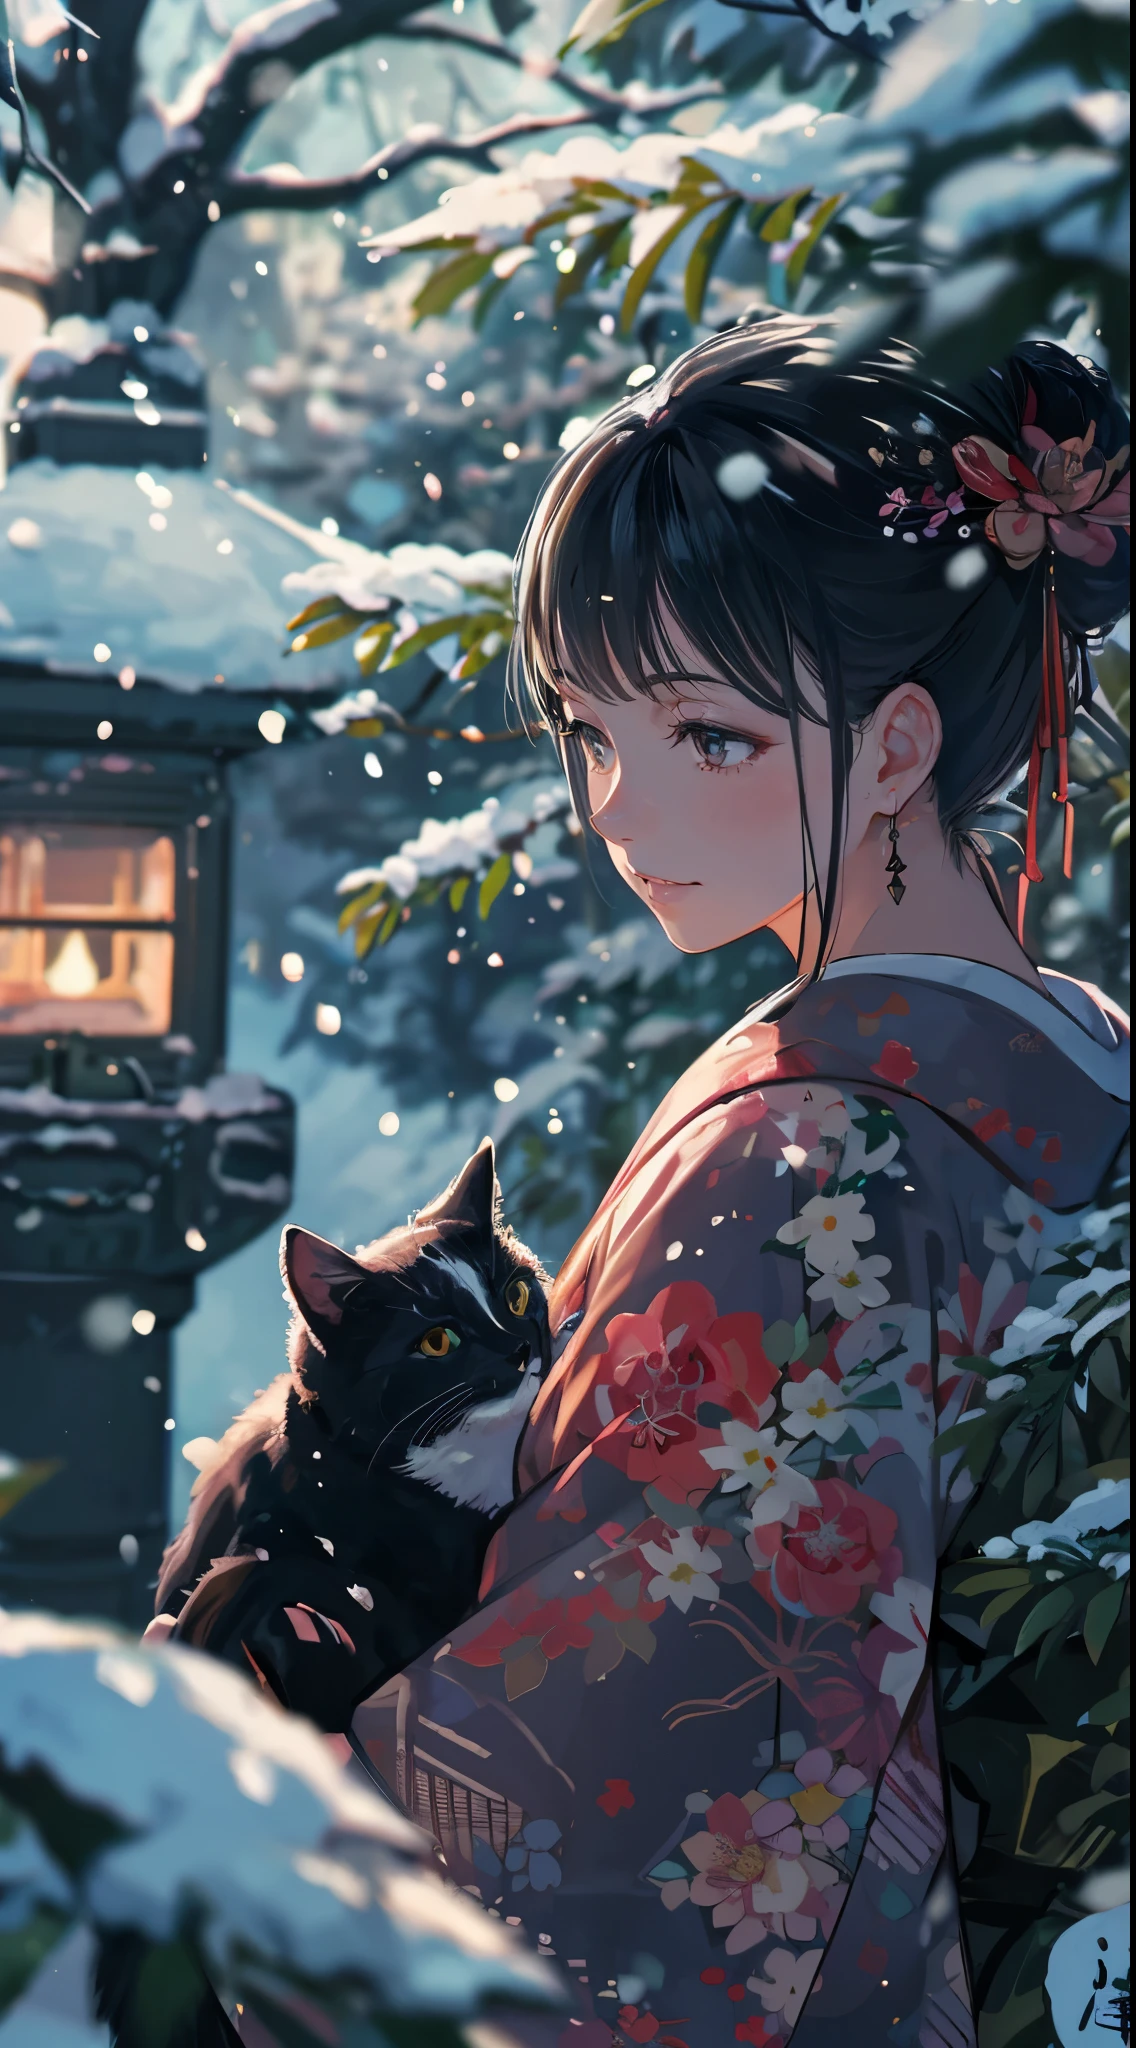 высокое качество, женщина крупным планом, сумма рисунка, пиксив иллюстрация, Красивая молодая женщина празднует Новый год в традиционной японской обстановке.. Момент перед тем, как он берет черную кошку и целует ее.. Тихий сад, покрытый снегом. В саду есть небольшая сосна и каменный фонарь, покрытый снегом., Мягко освещенный ранним утренним светом Нового года.. черты лица: гладкие черные волосы, Выполнен в классическом стиле, и глубокие карие глаза, отражающие обнадеживающее начало Нового года.